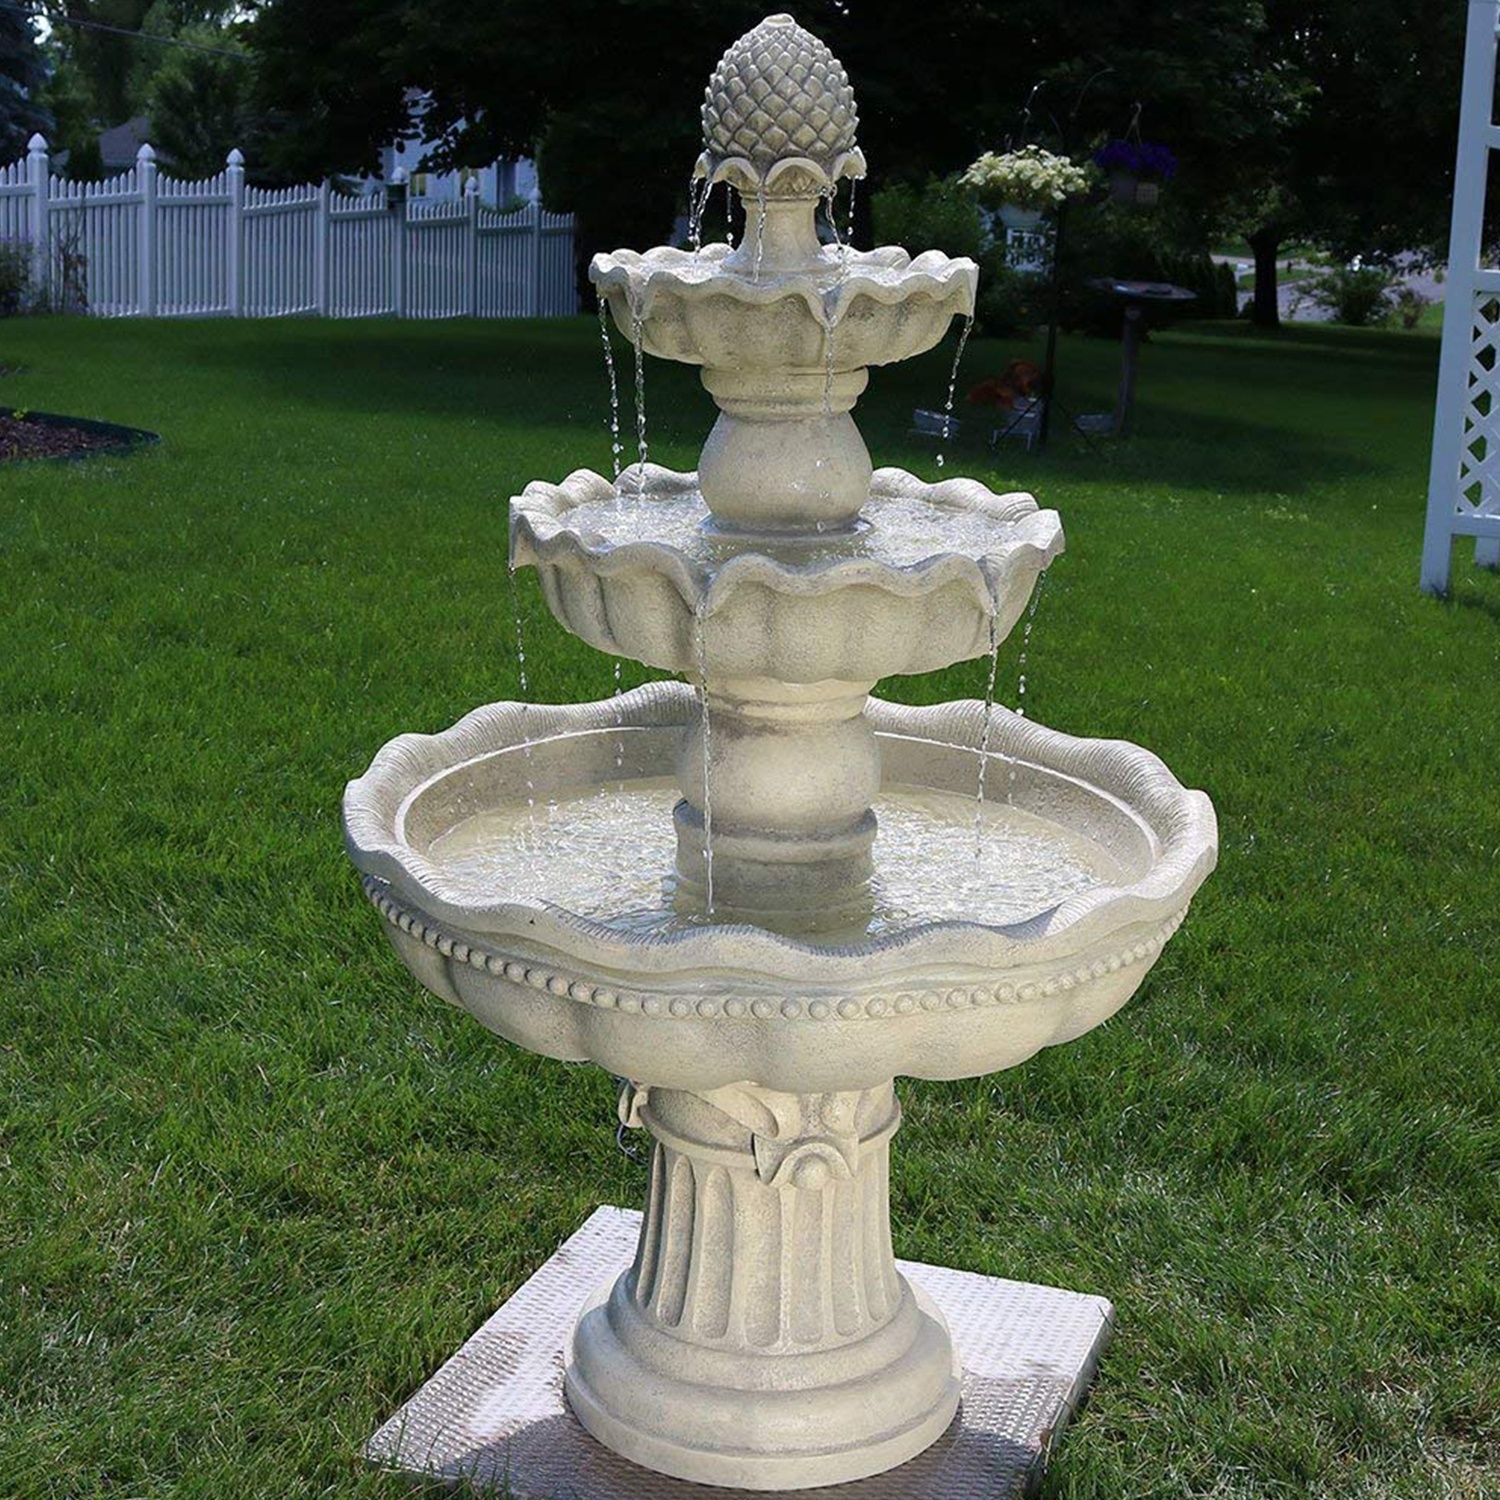 Sunnydaze 3-Tier Pineapple Outdoor Garden Fountain, White, 51 Inch Tall